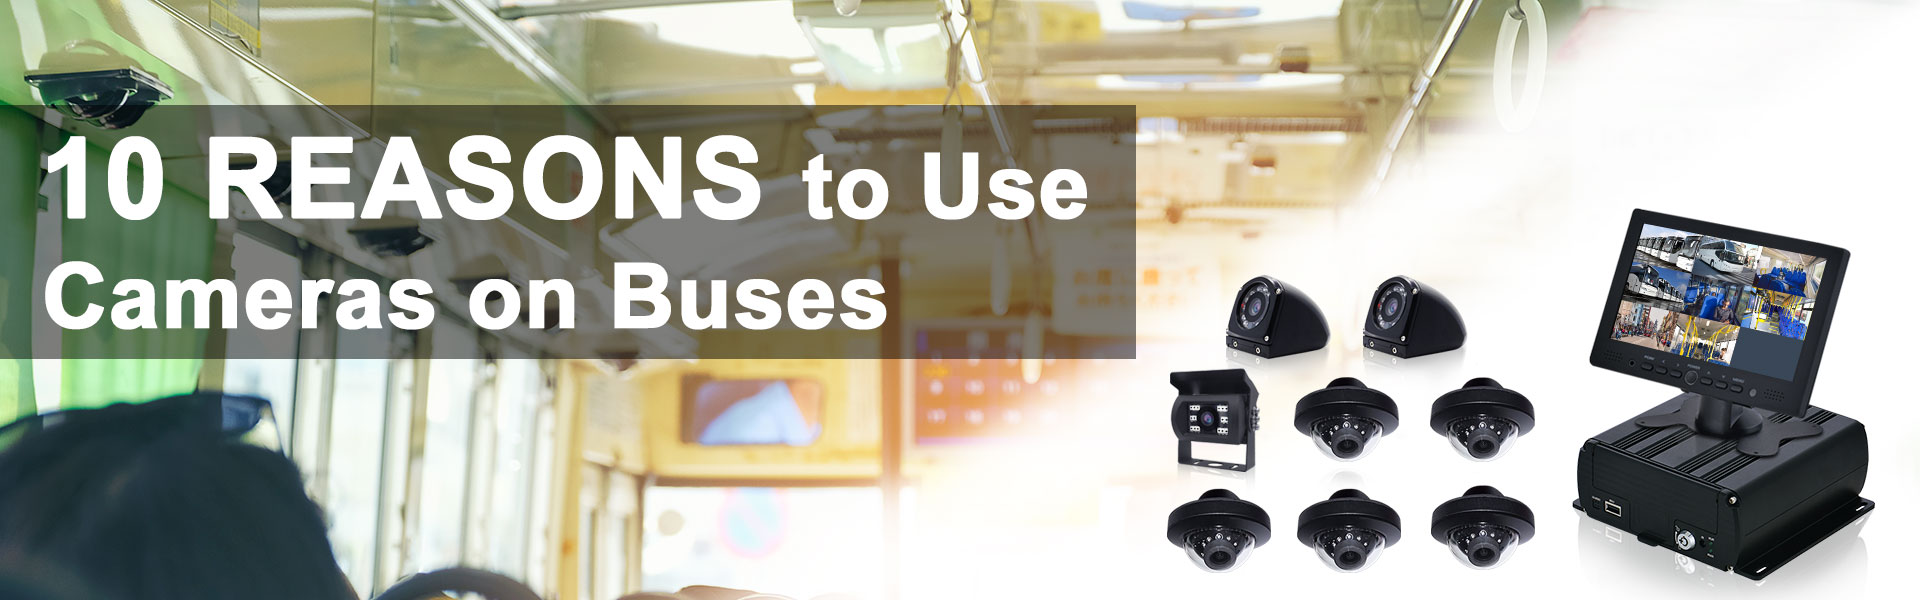 버스에서 카메라를 사용해야 하는 10가지 이유